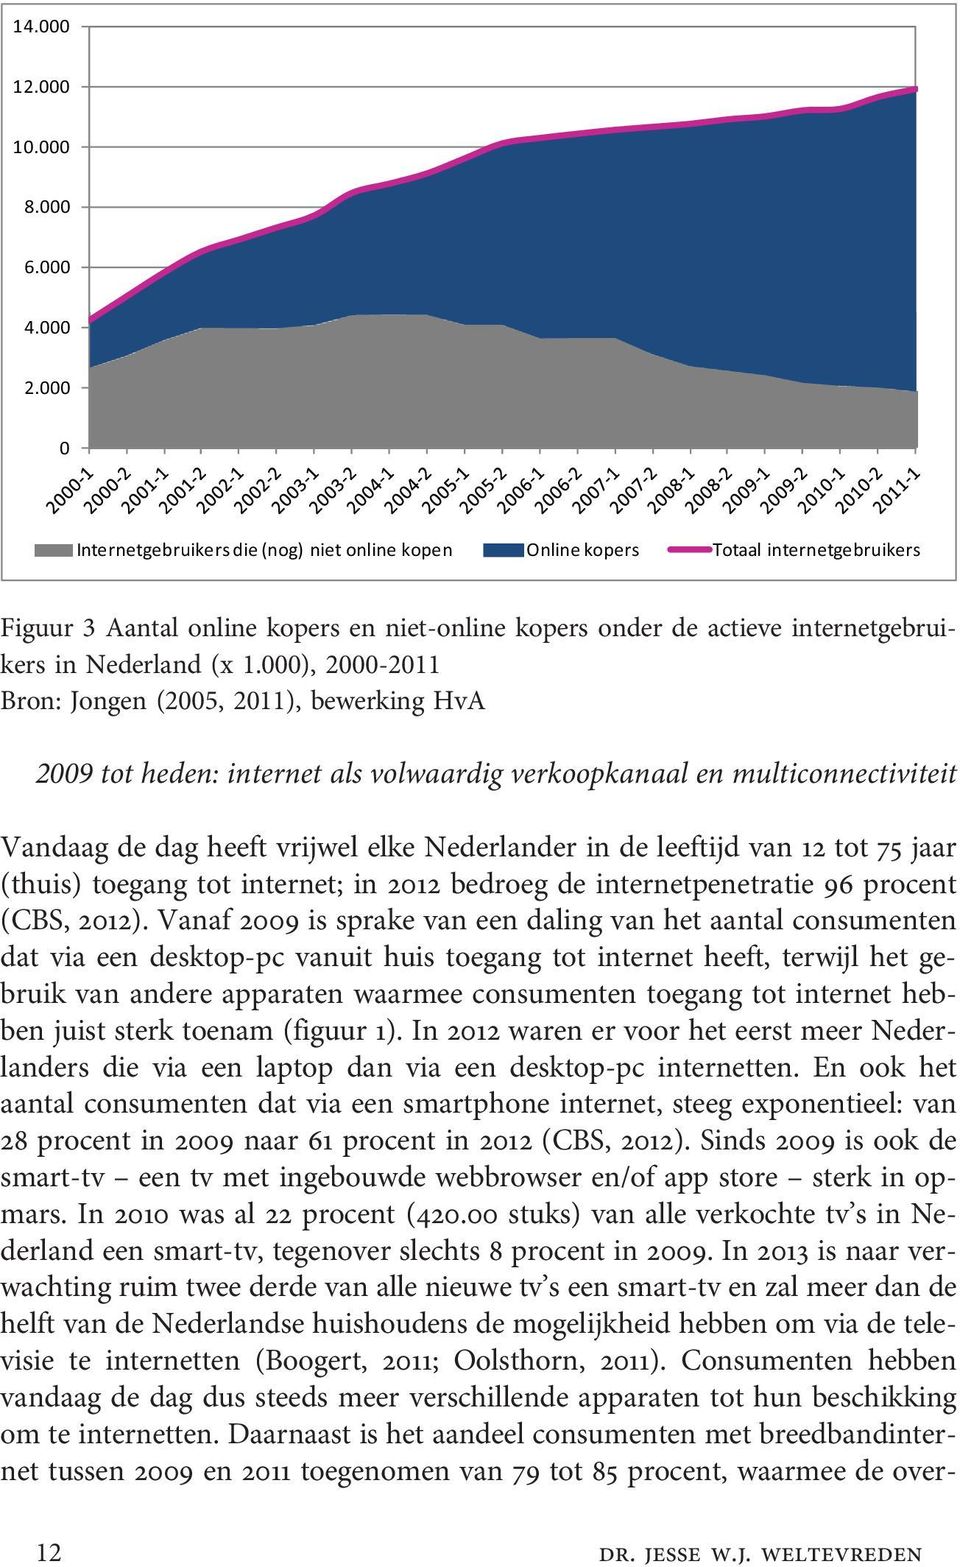 000), 2000-2011 Bron: Jongen (2005, 2011), bewerking HvA 2009 tot heden: internet als volwaardig verkoopkanaal en multiconnectiviteit Vandaag de dag heeft vrijwel elke Nederlander in de leeftijd van